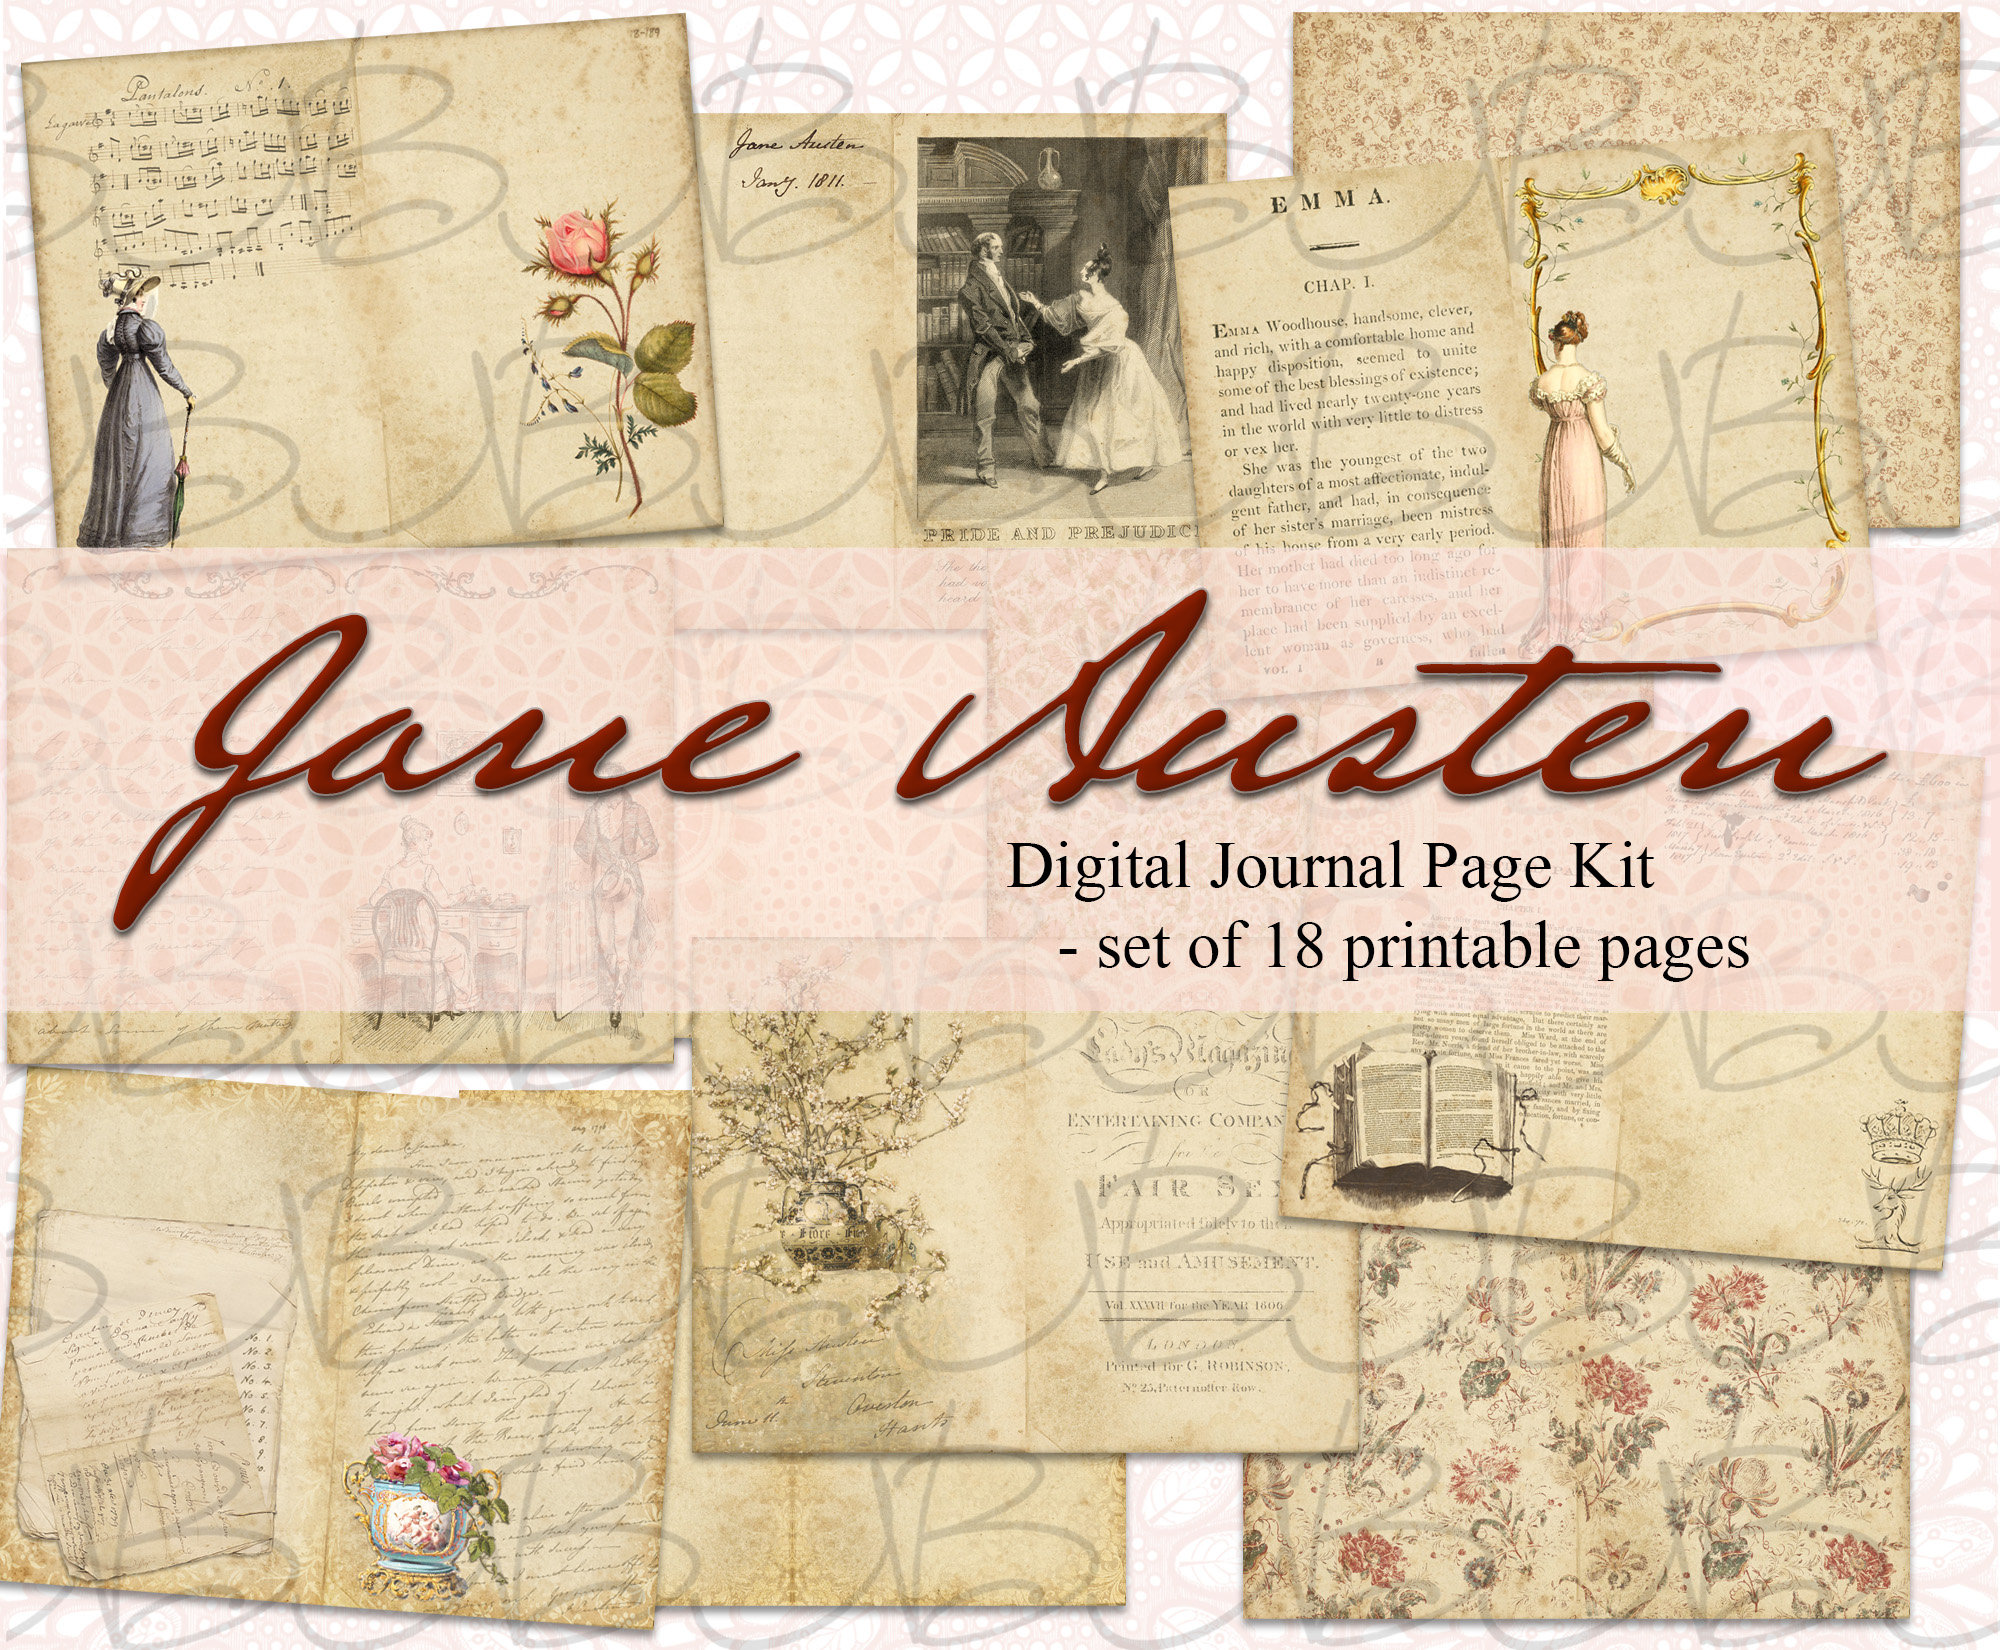 A Jane Austen Birthday Party - Dear Lillie Studio